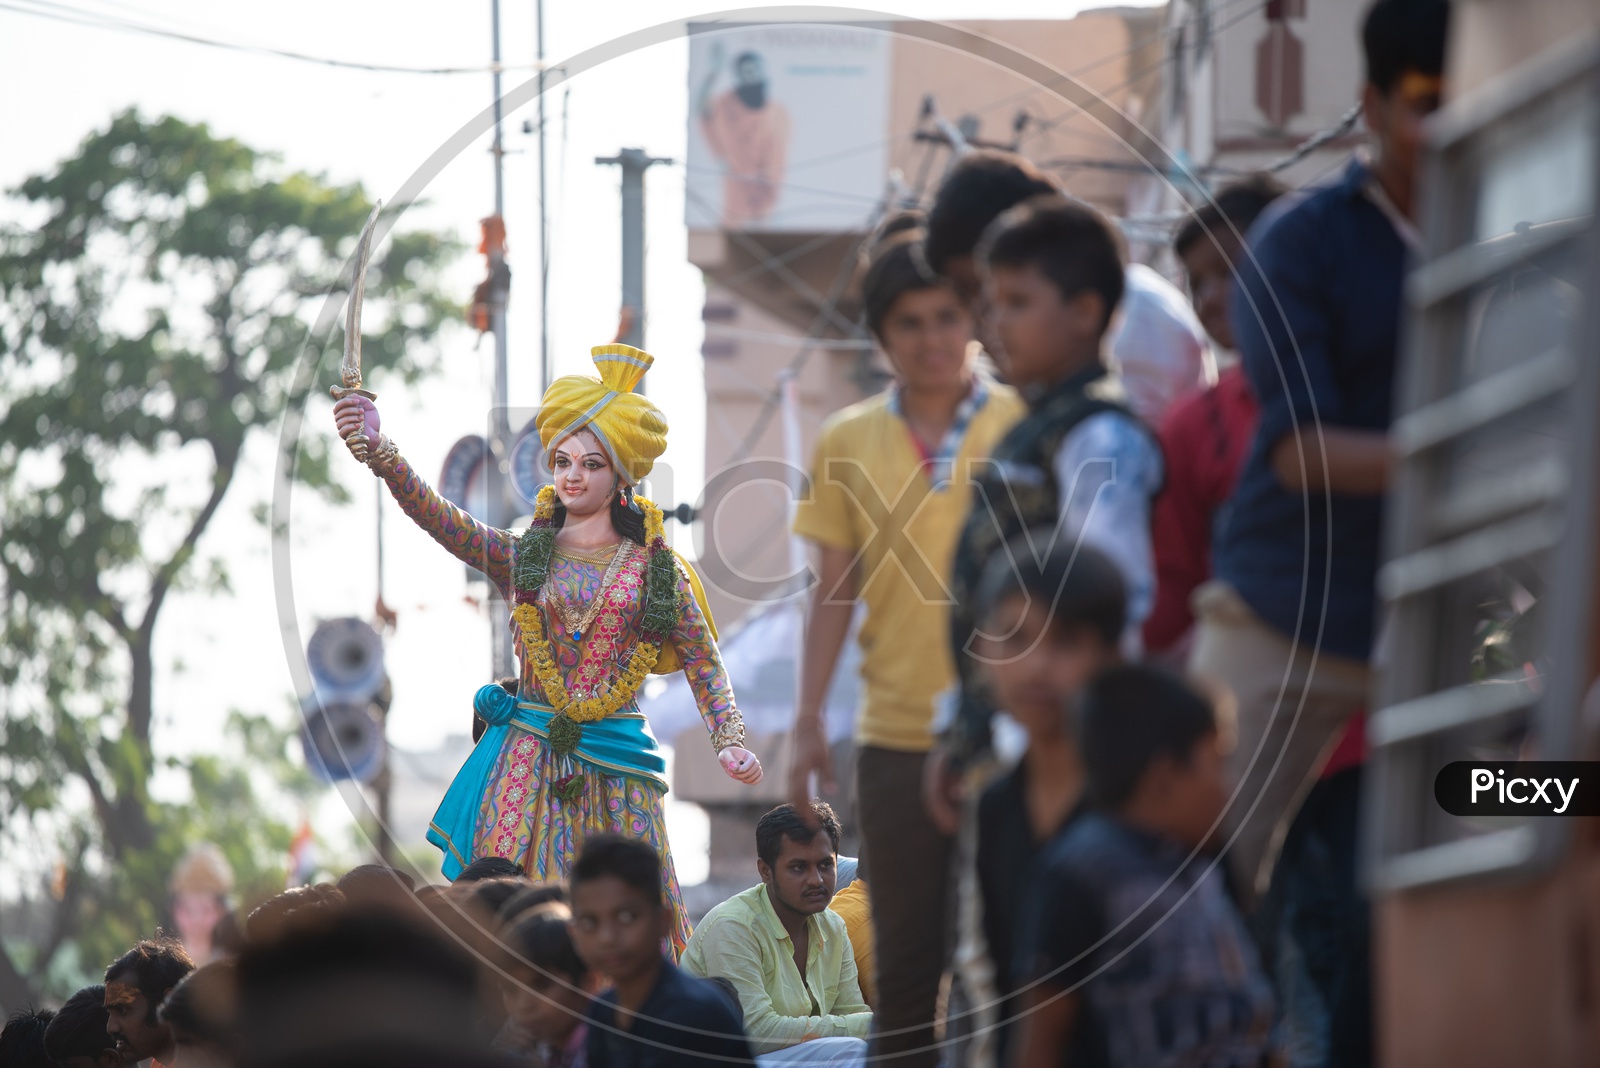 Idol of Rani Avanti bai procession at Shri Rama Shobha Yatra in Hyderabad